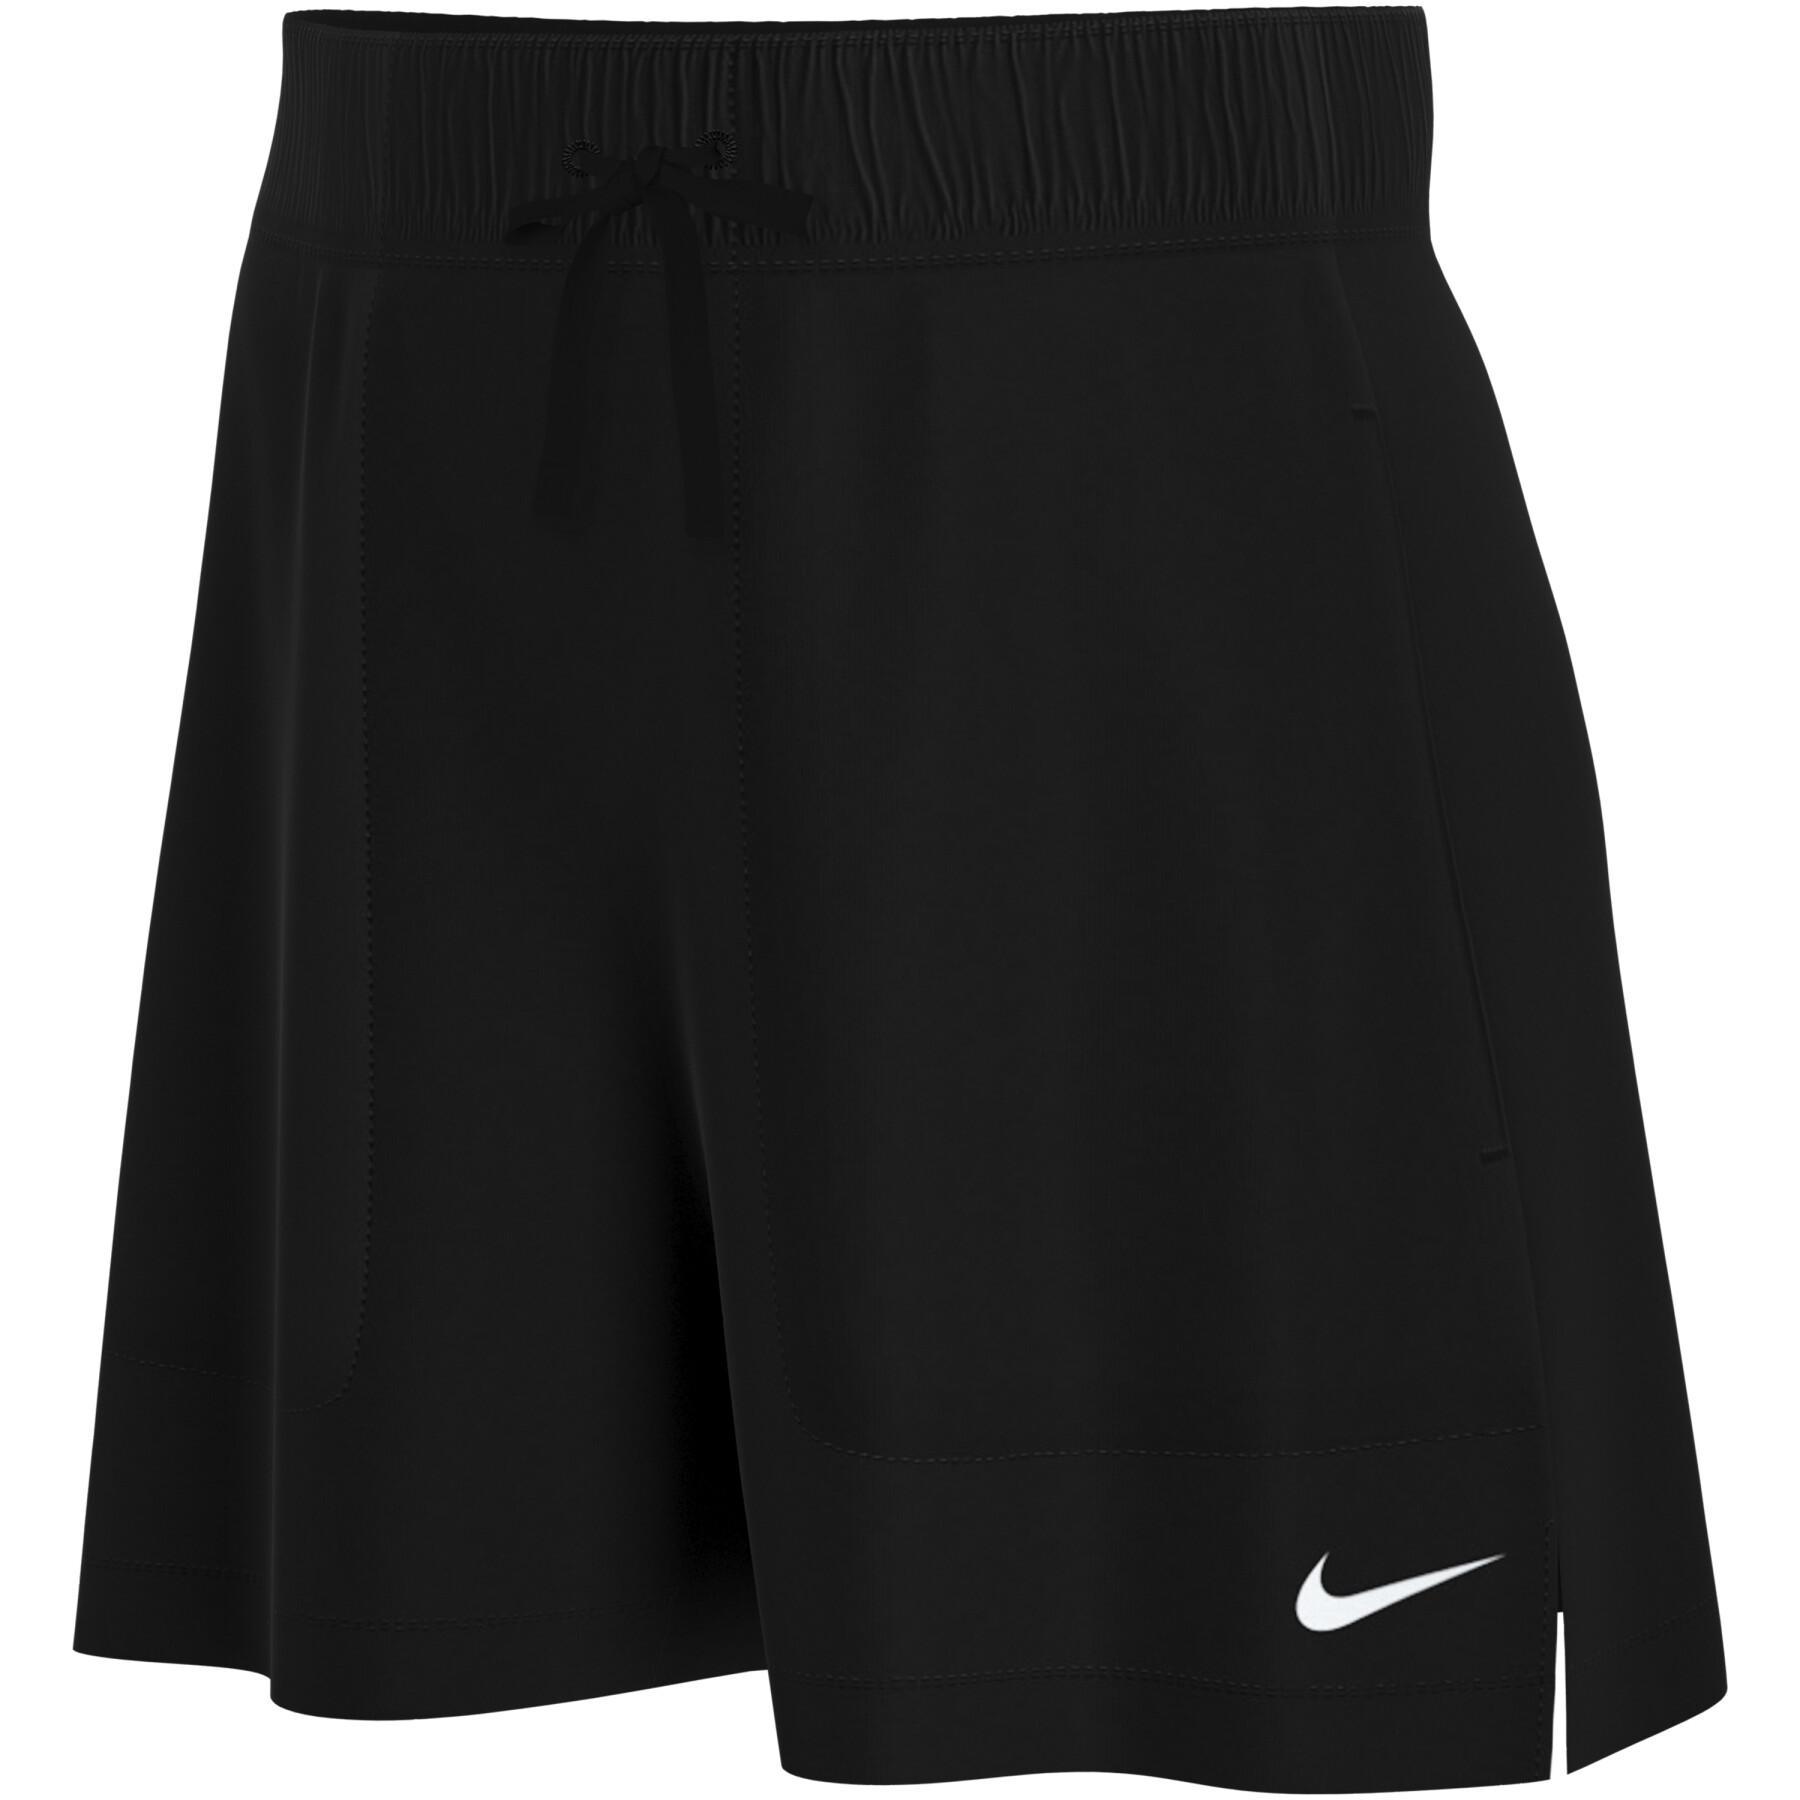 Damen-Shorts Nike dri-fit attack